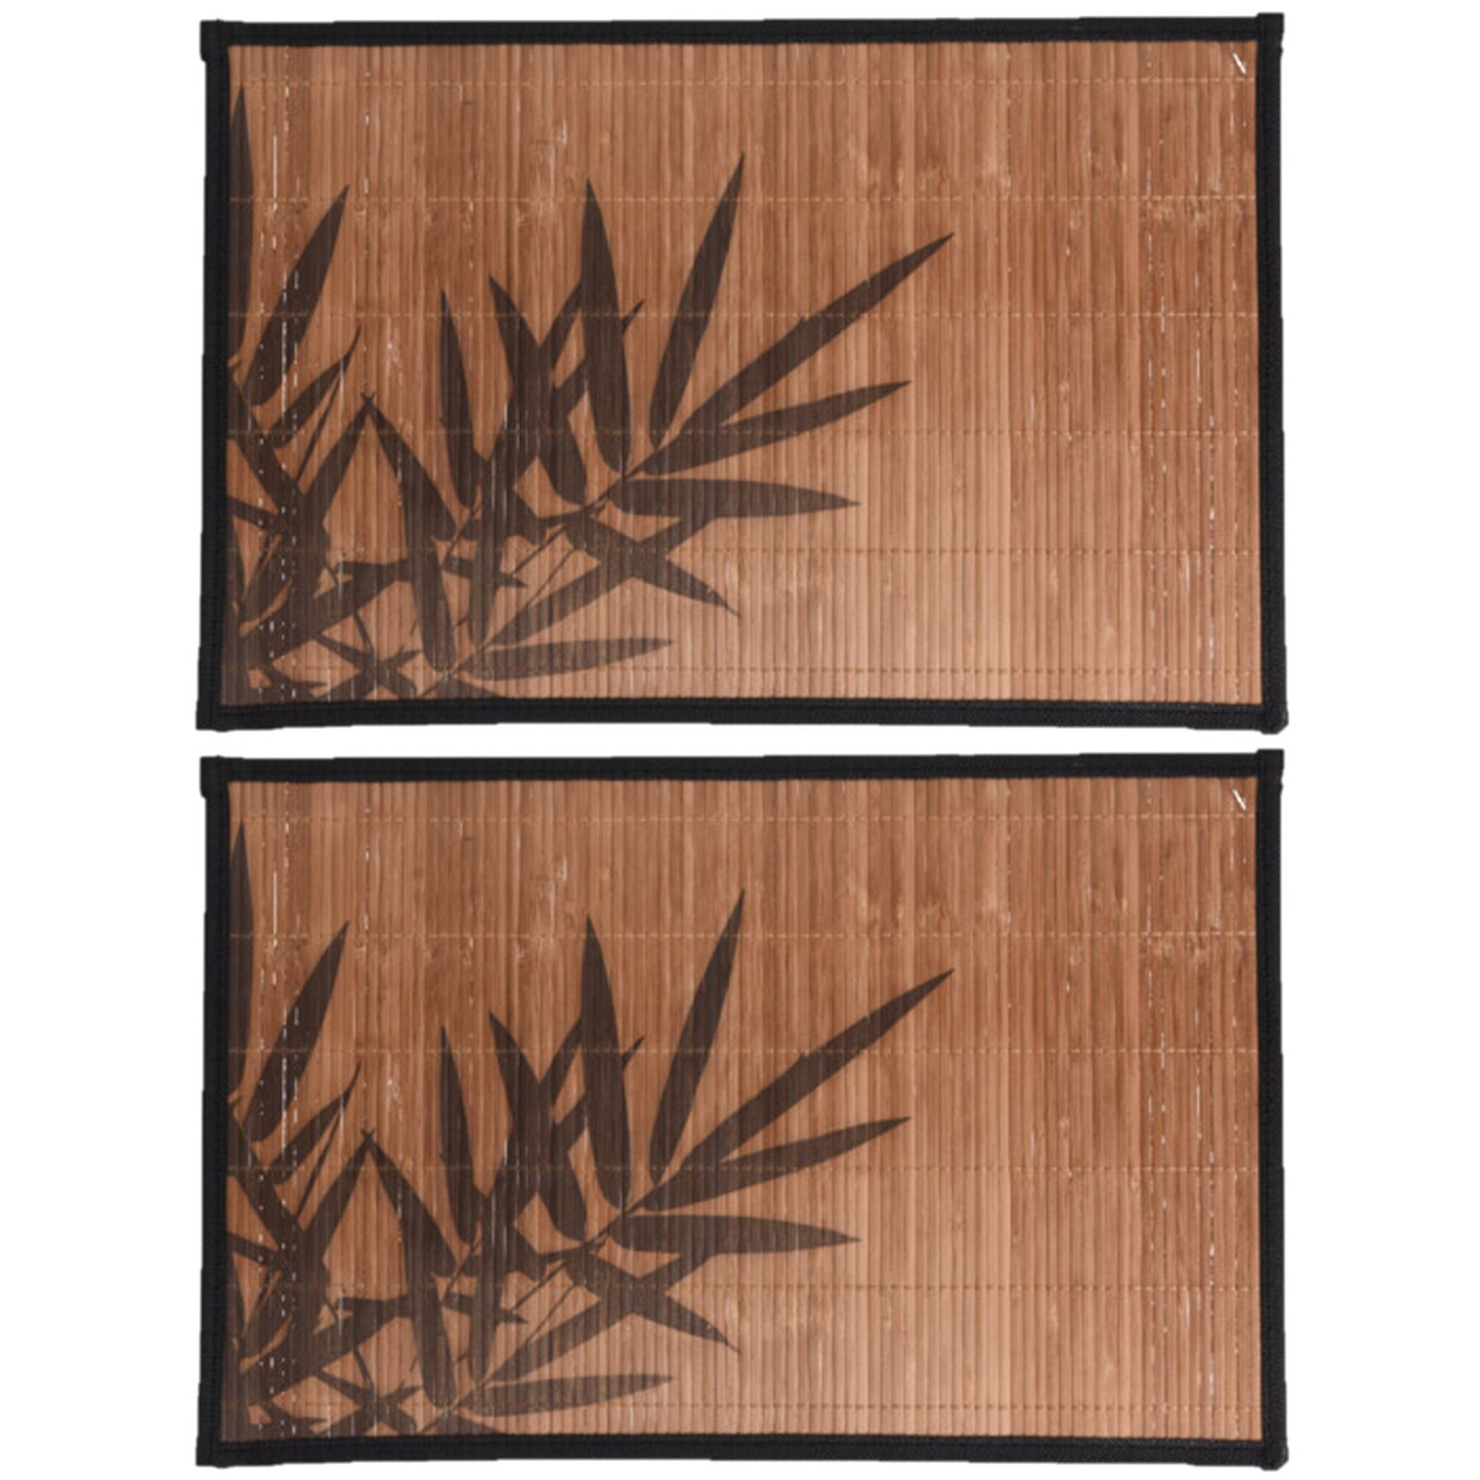 6x stuks rechthoekige placemat 30 x 45 cm bamboe bruin met zwarte bamboe print 2